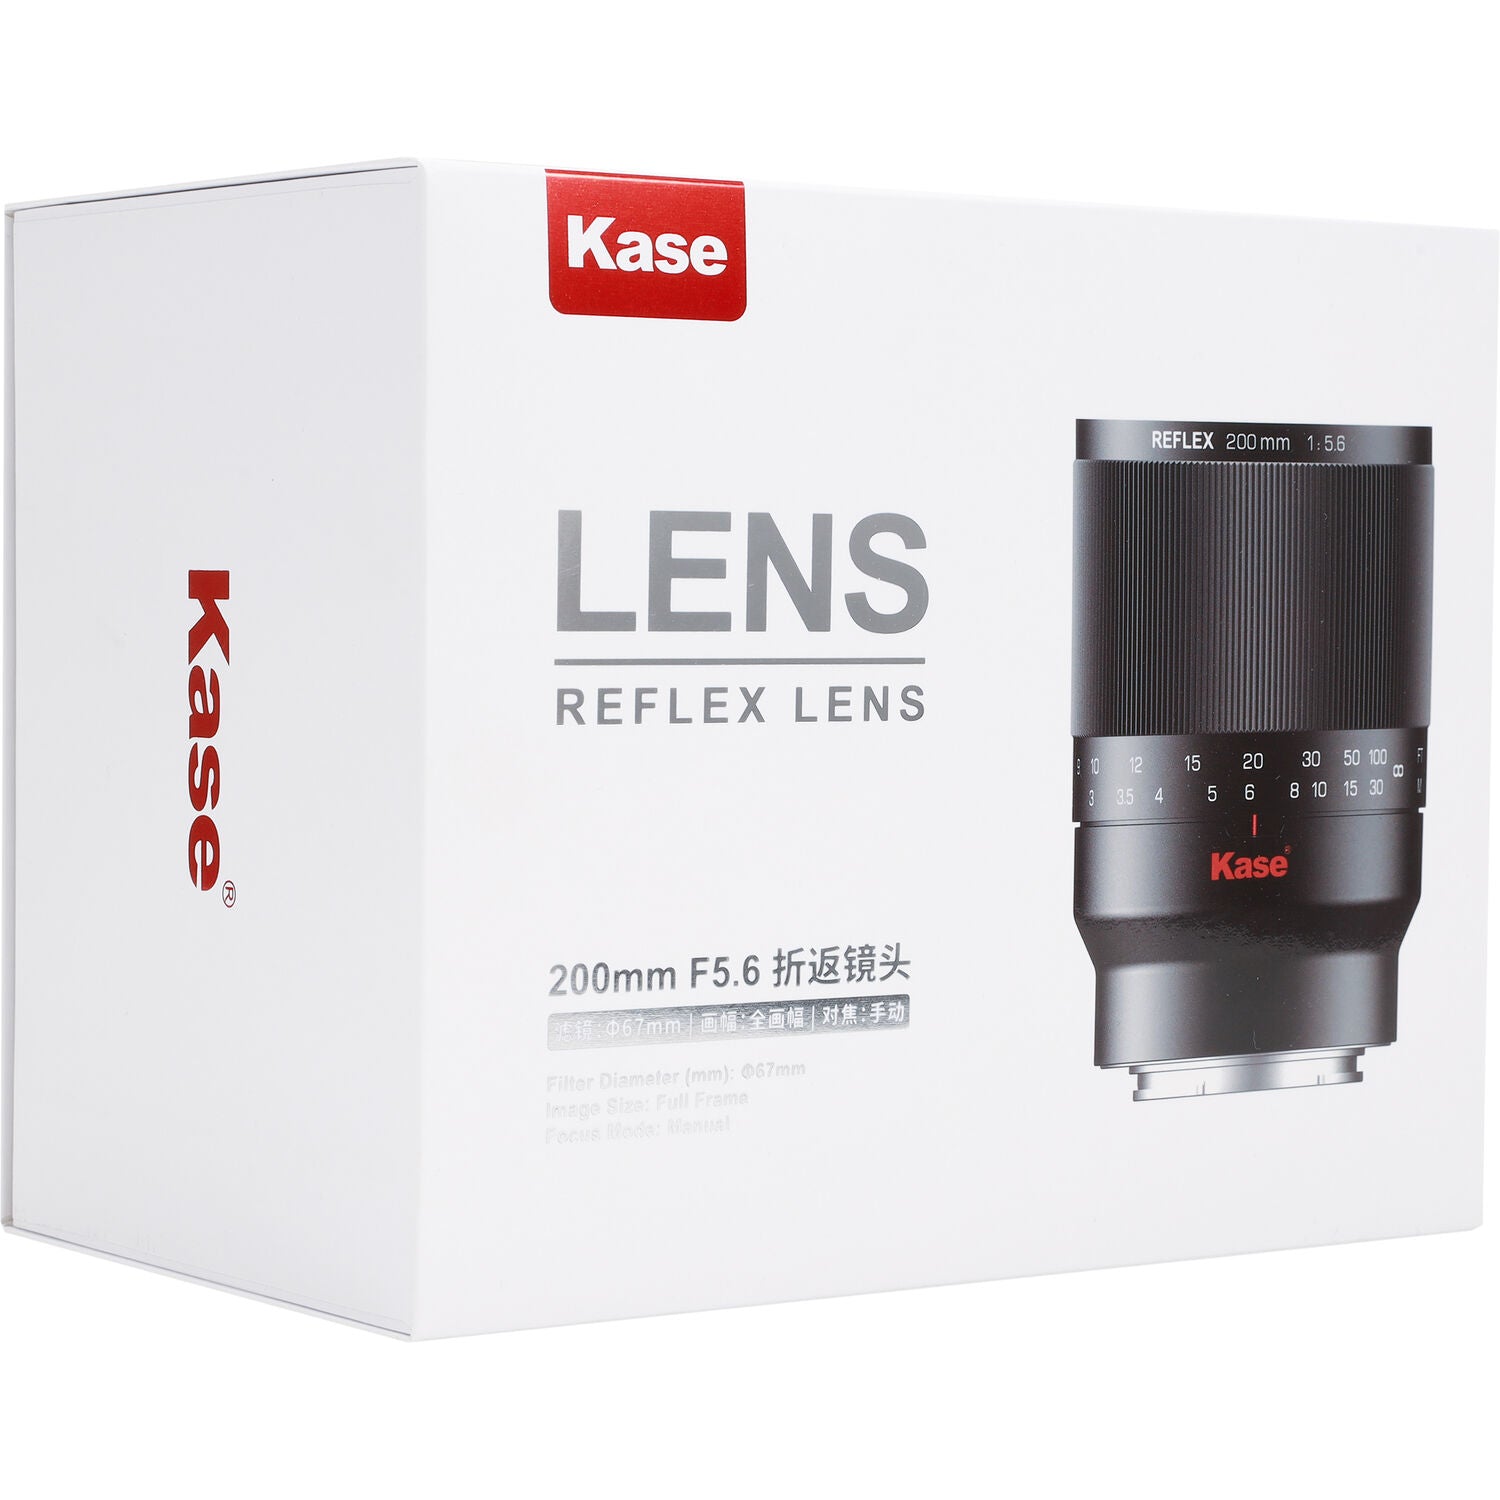 Load video: Kase Reflex Lens